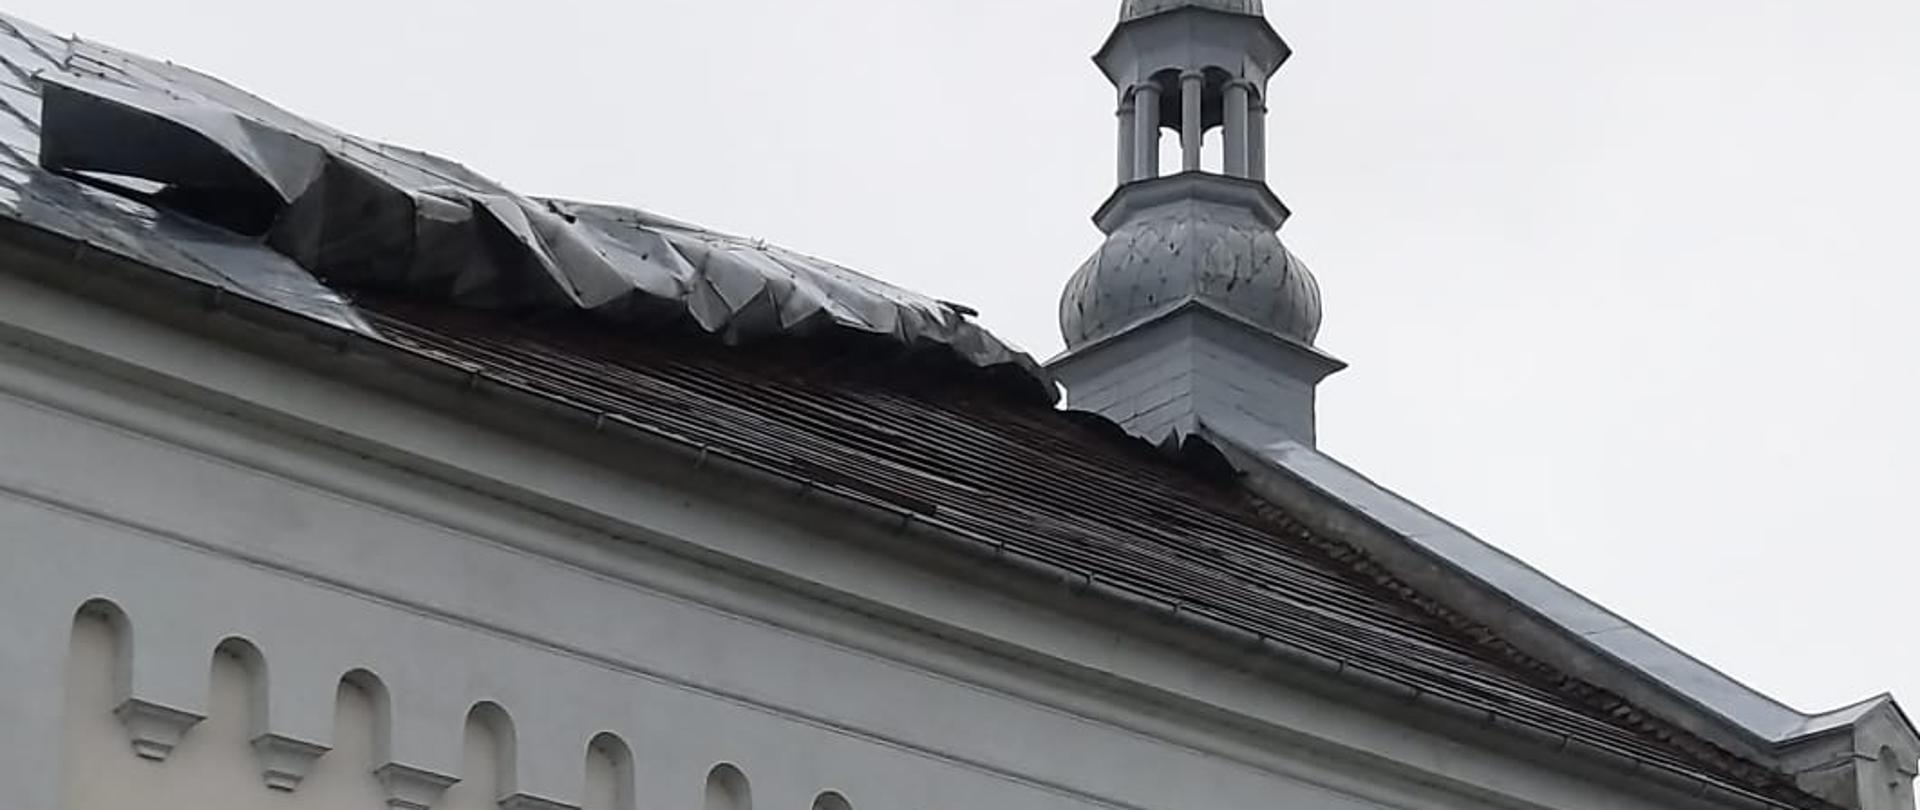 Zdjęcie przedstawia uszkodzony dach kościoła w Chełmnie.